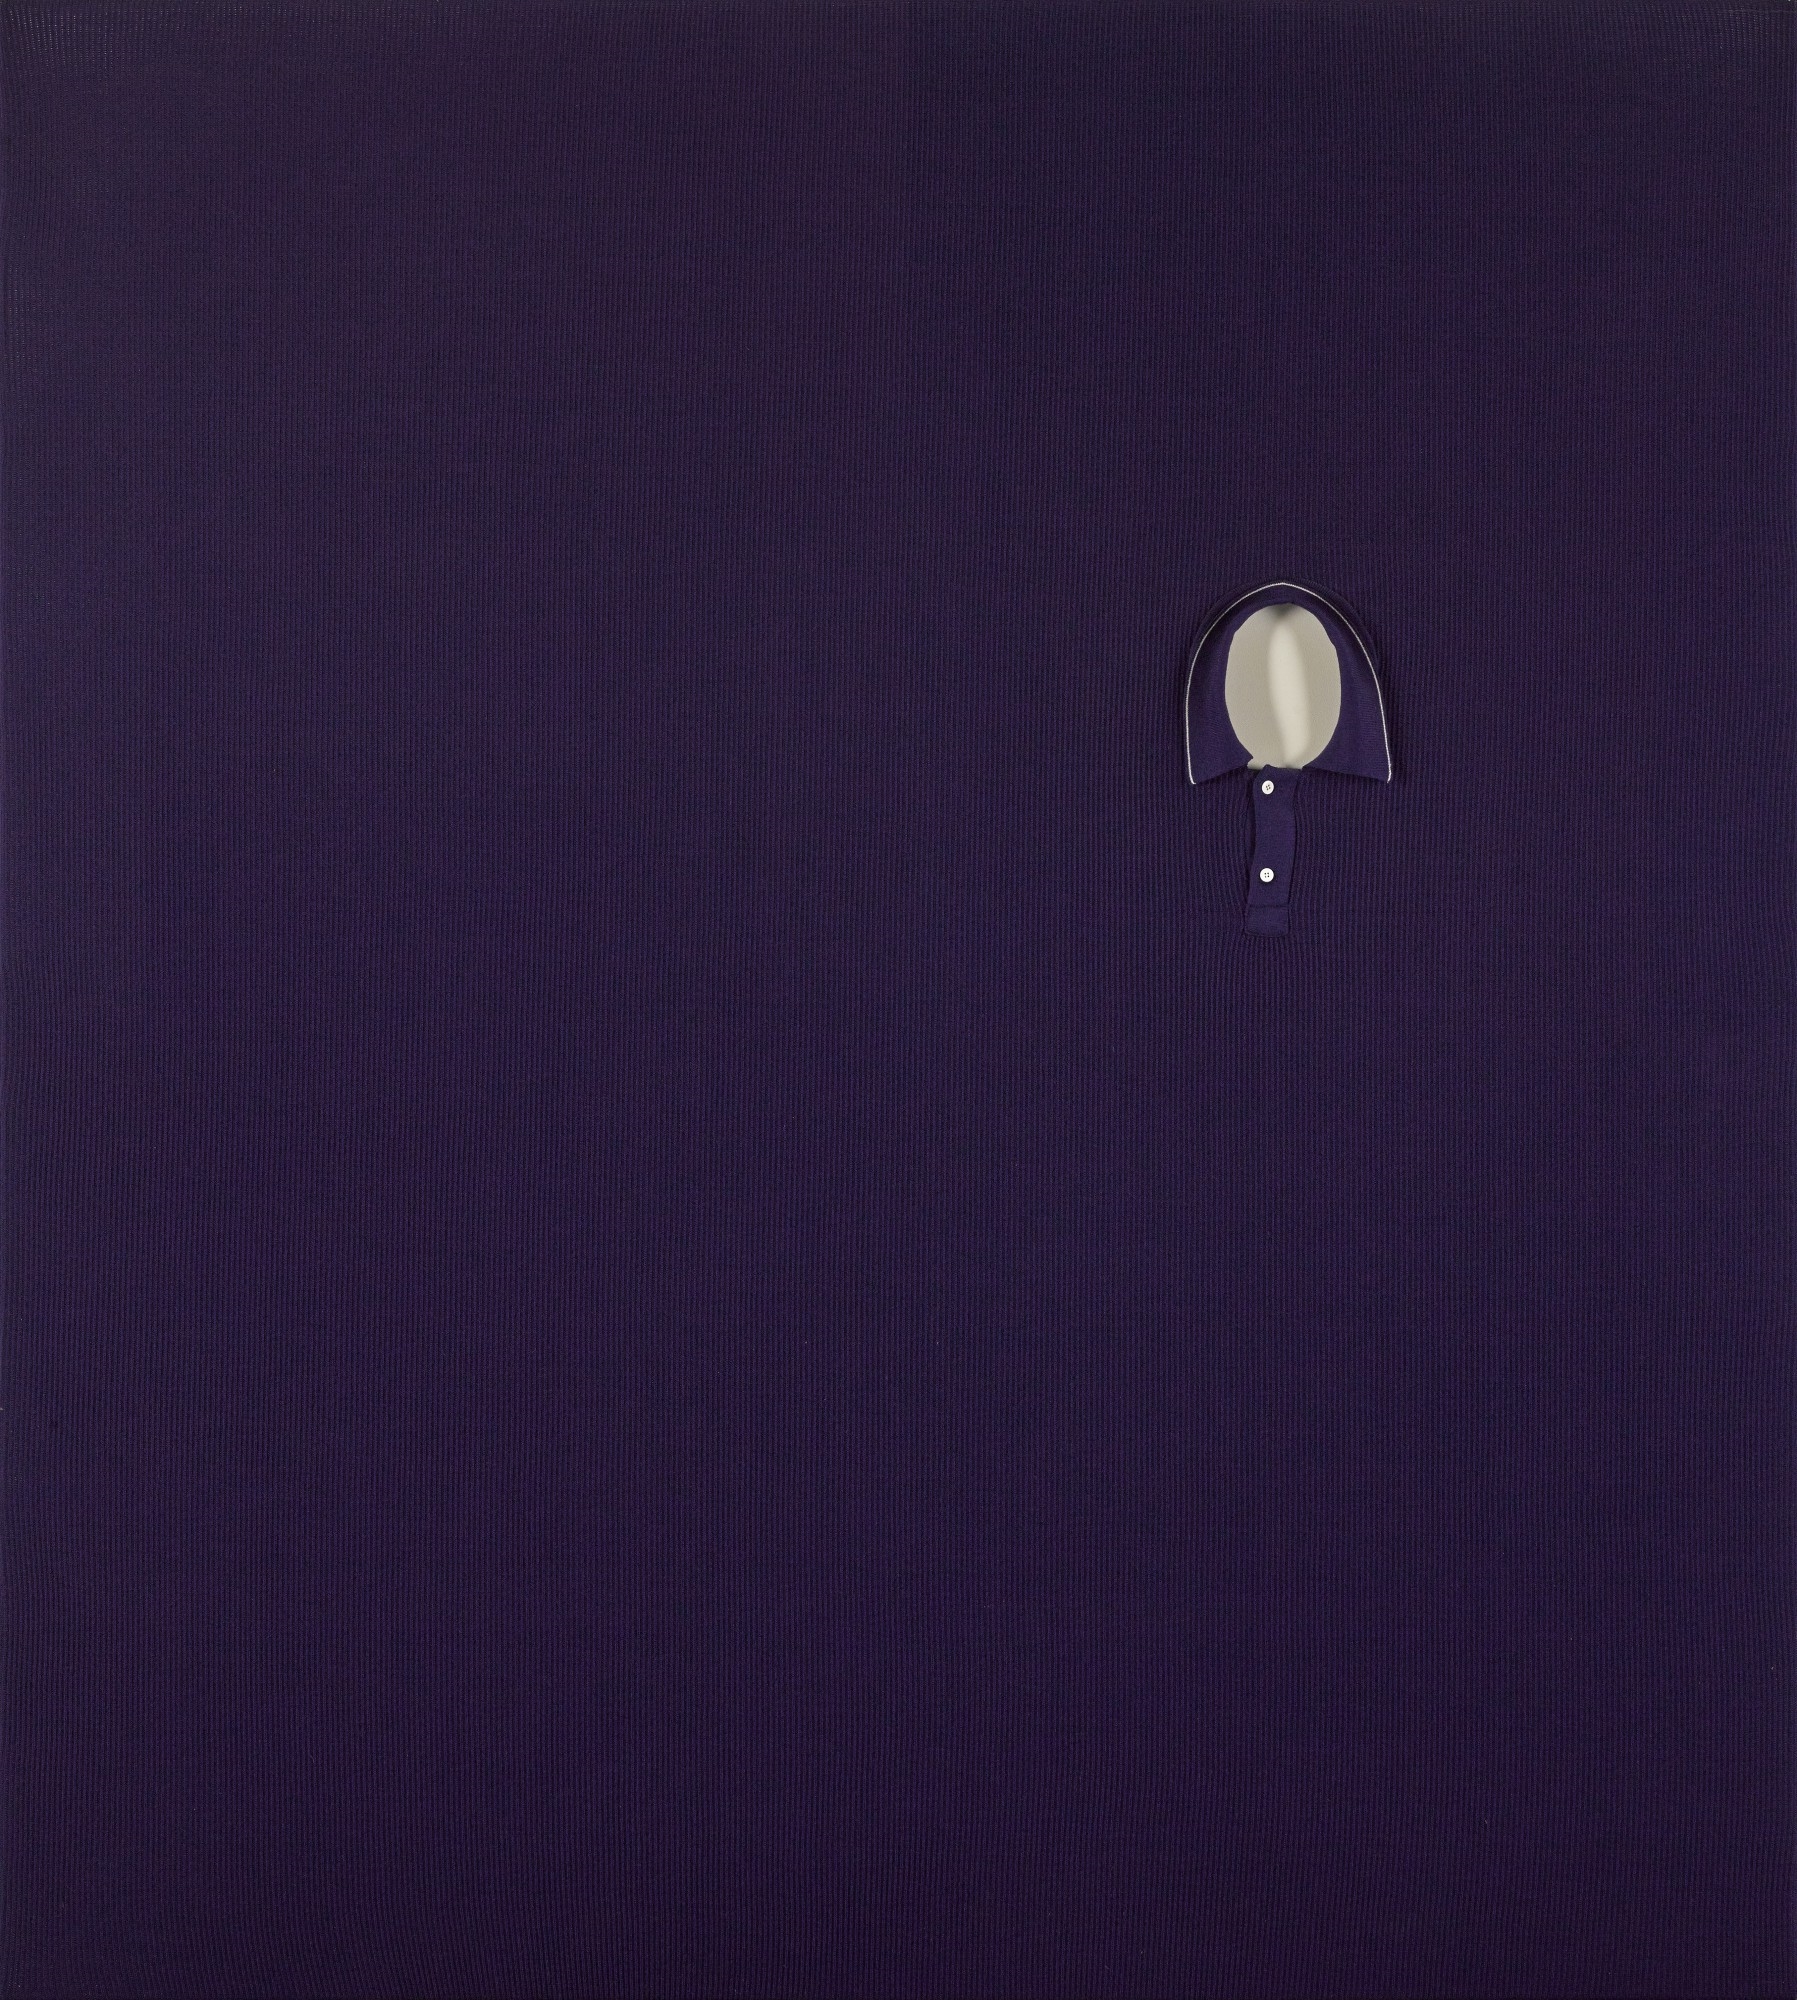 Mental Blue II by Erwin Wurm, dated 2007